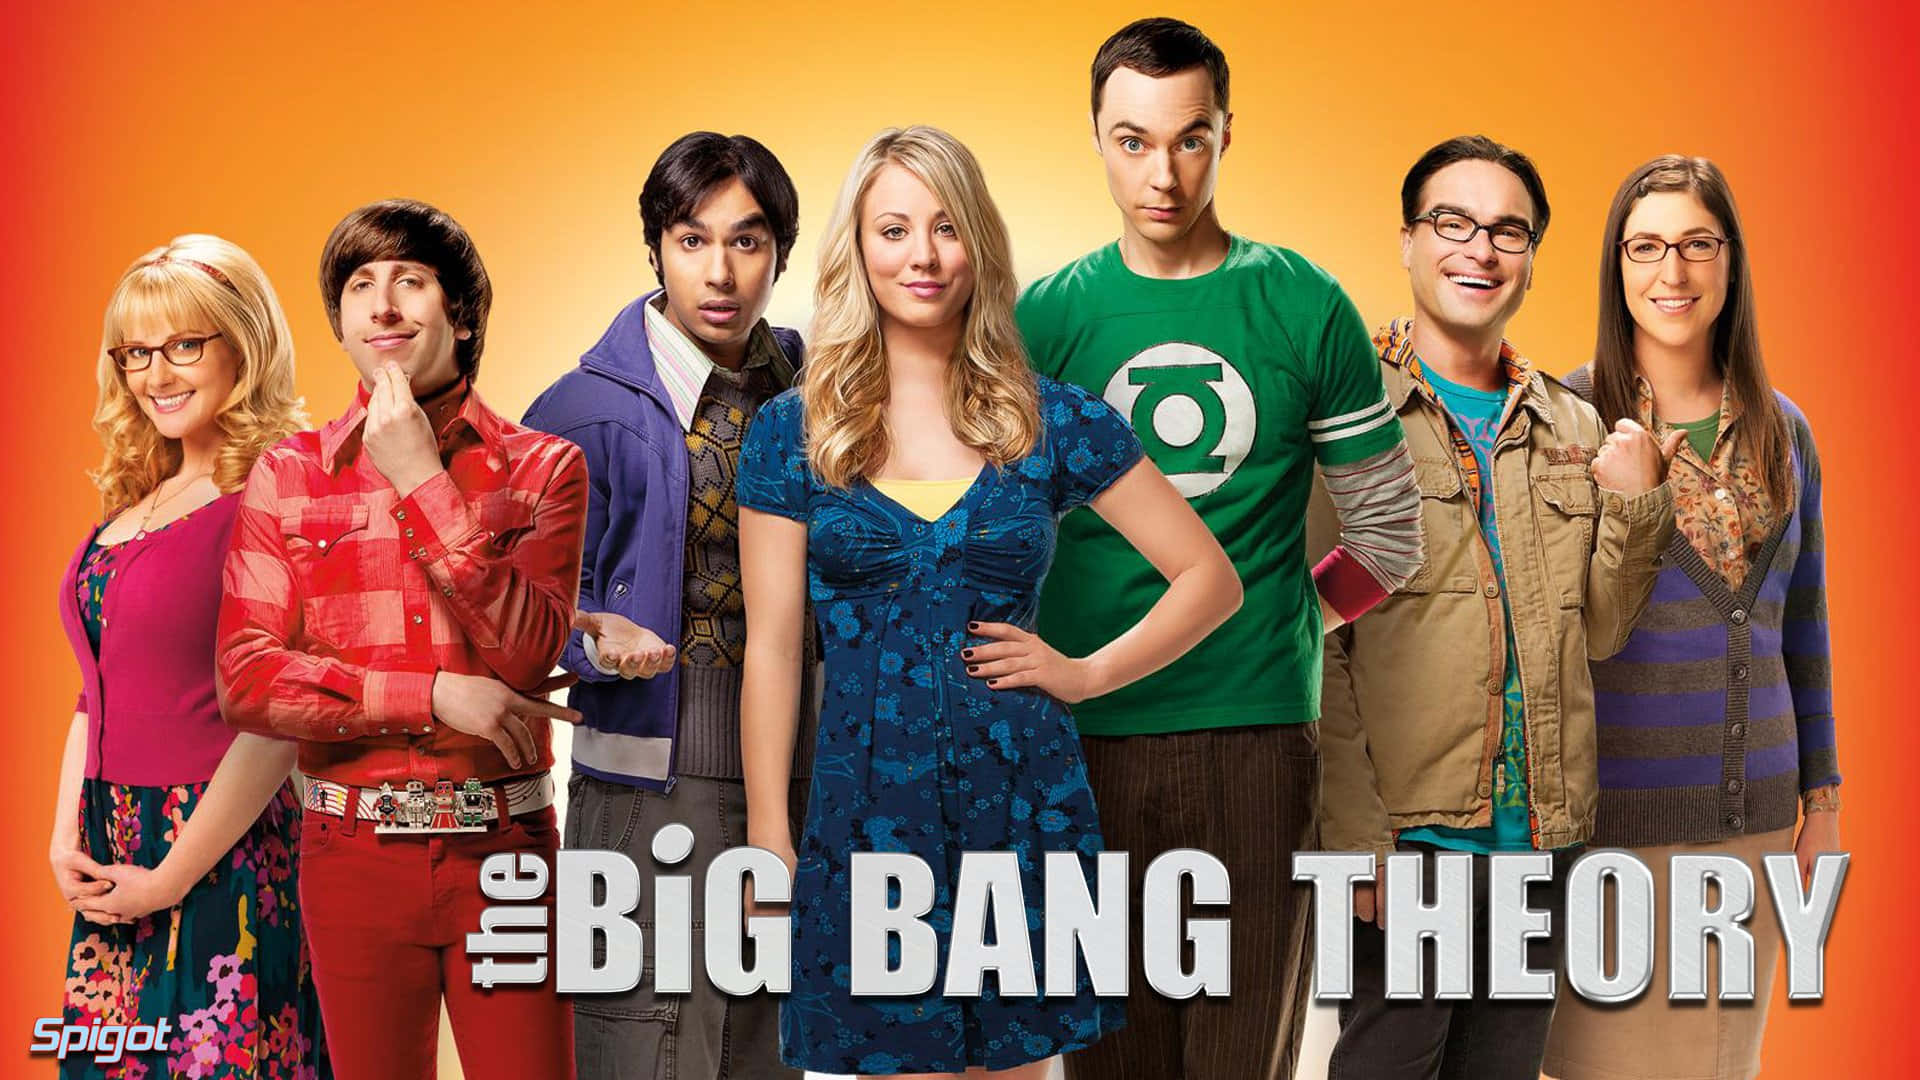 Theoretical Big Bang Theory [wallpaper] Wallpaper